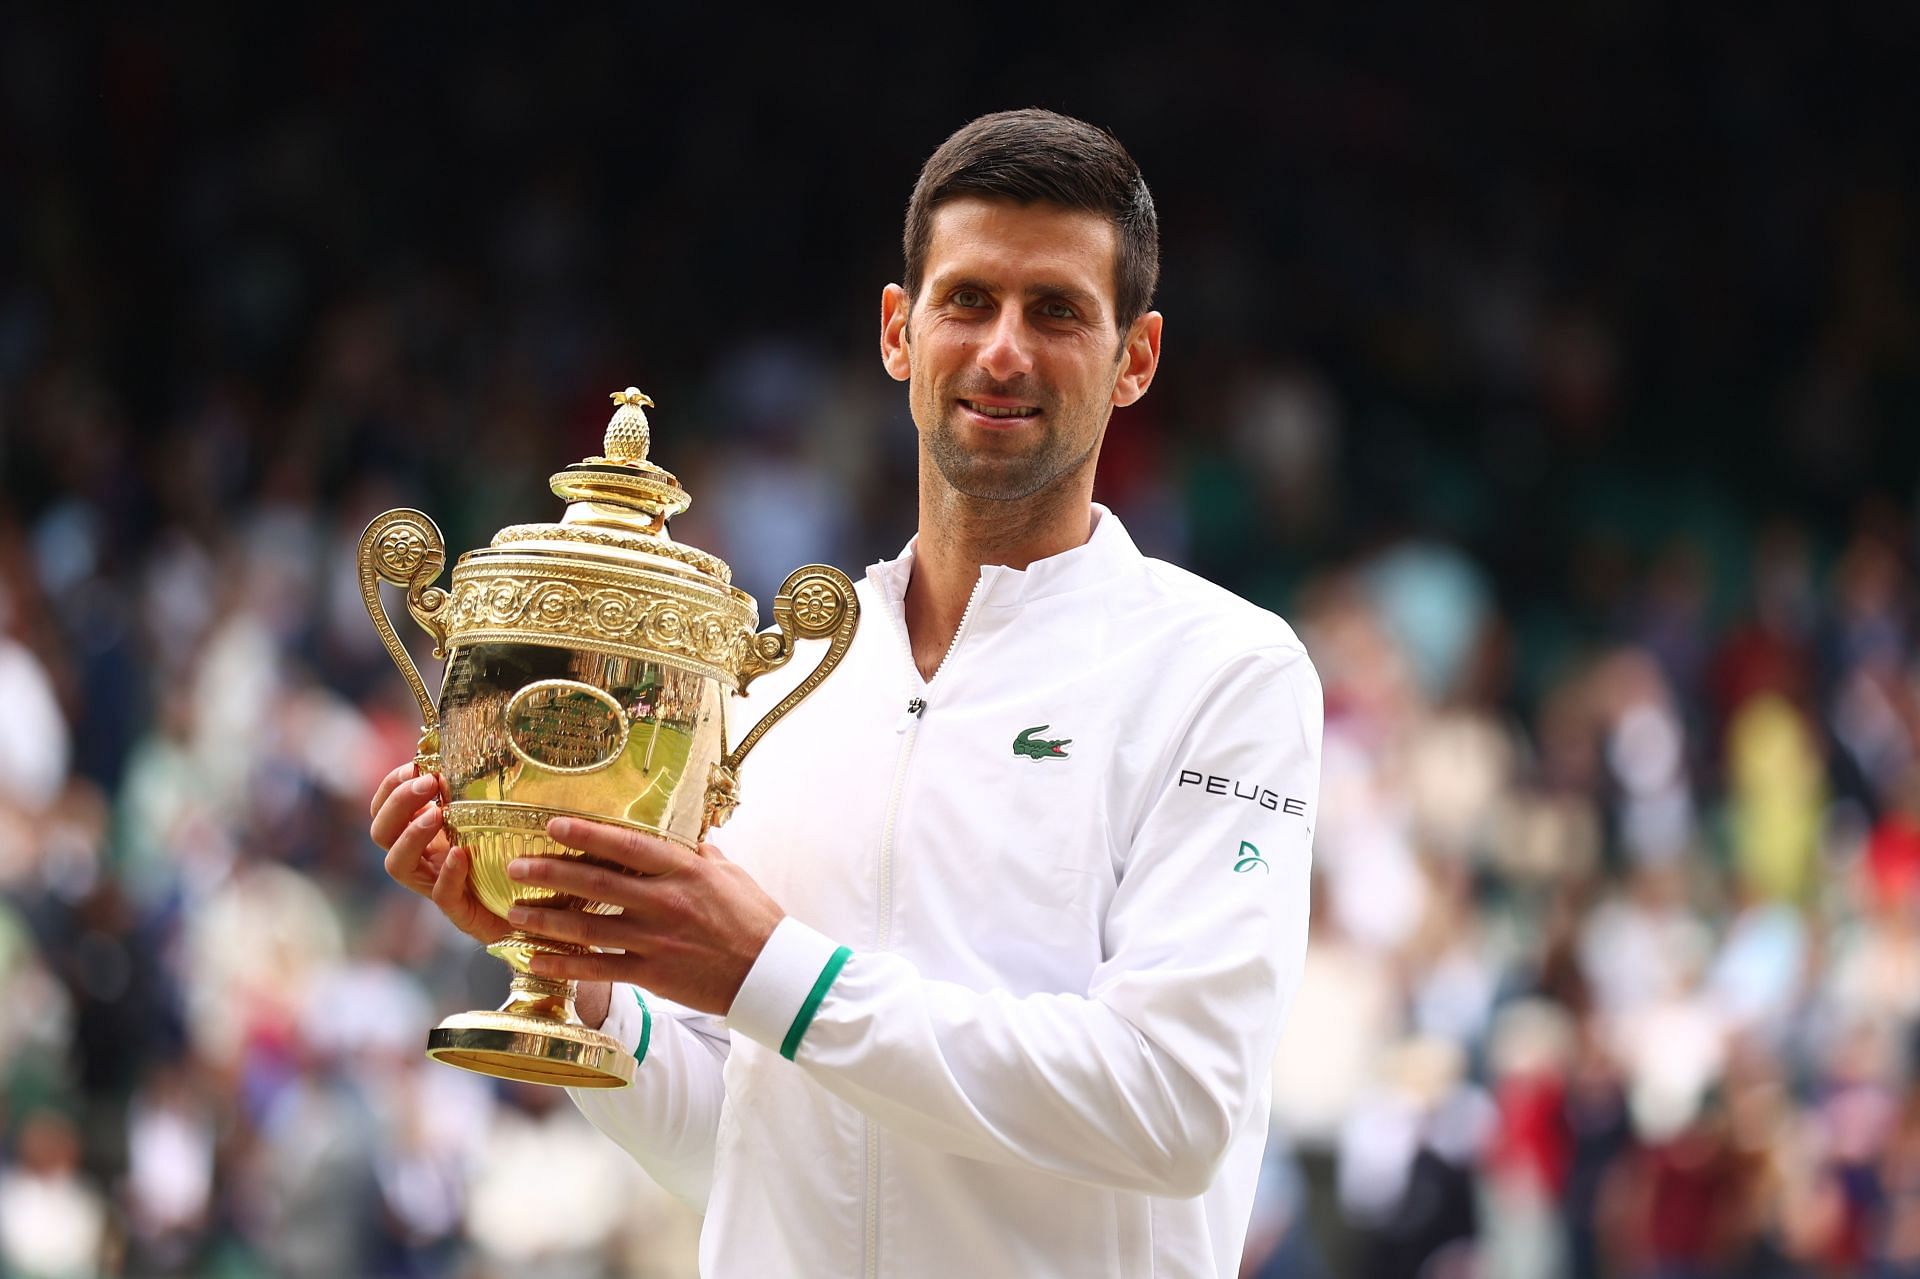 Novak Djokovic at the 2021 Wimbledon.